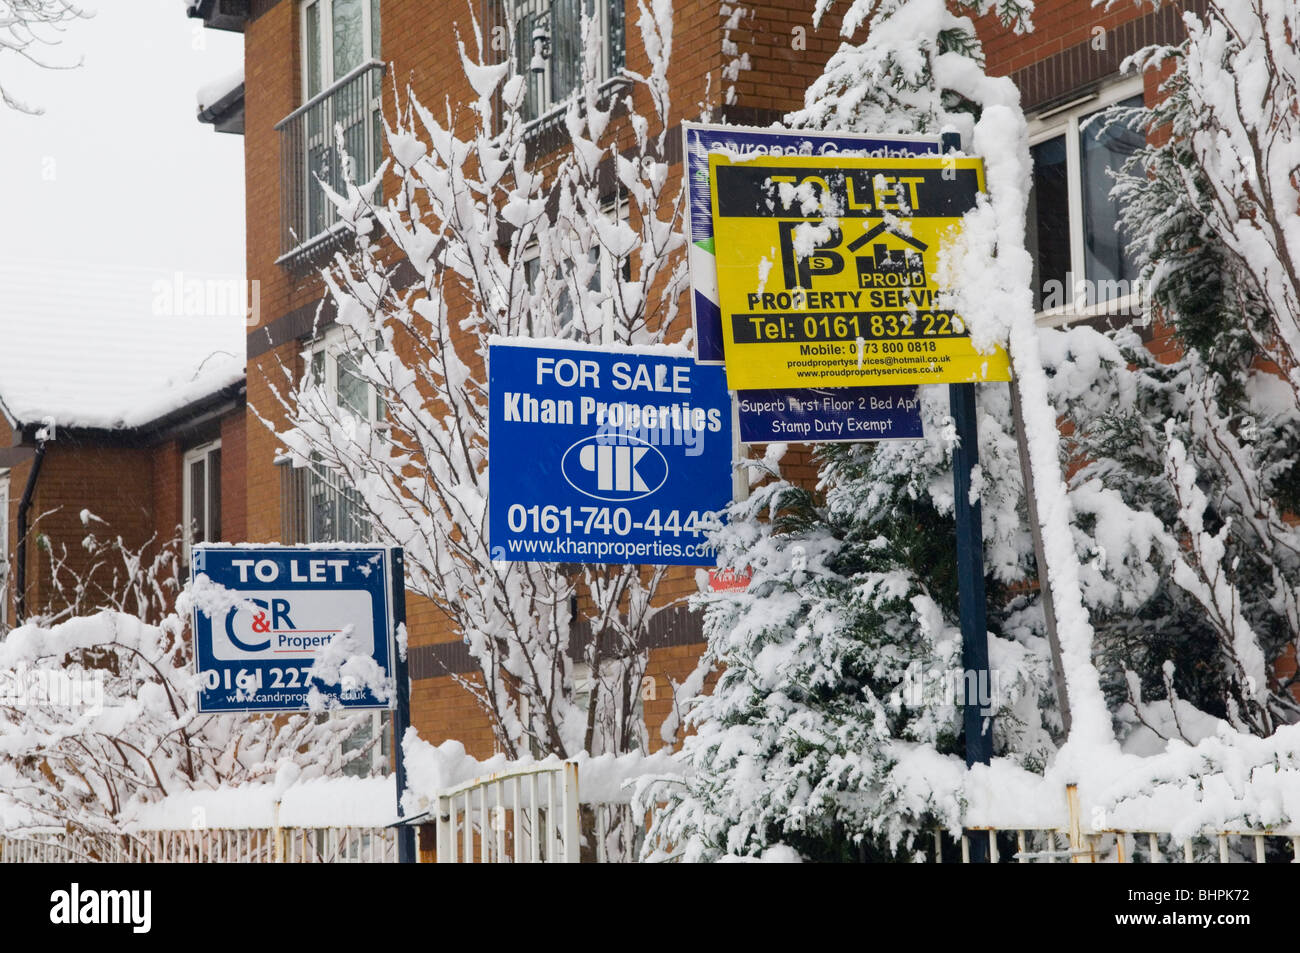 En vue de la vente et de laisser les panneaux recouverts de neige Manchester UK Banque D'Images